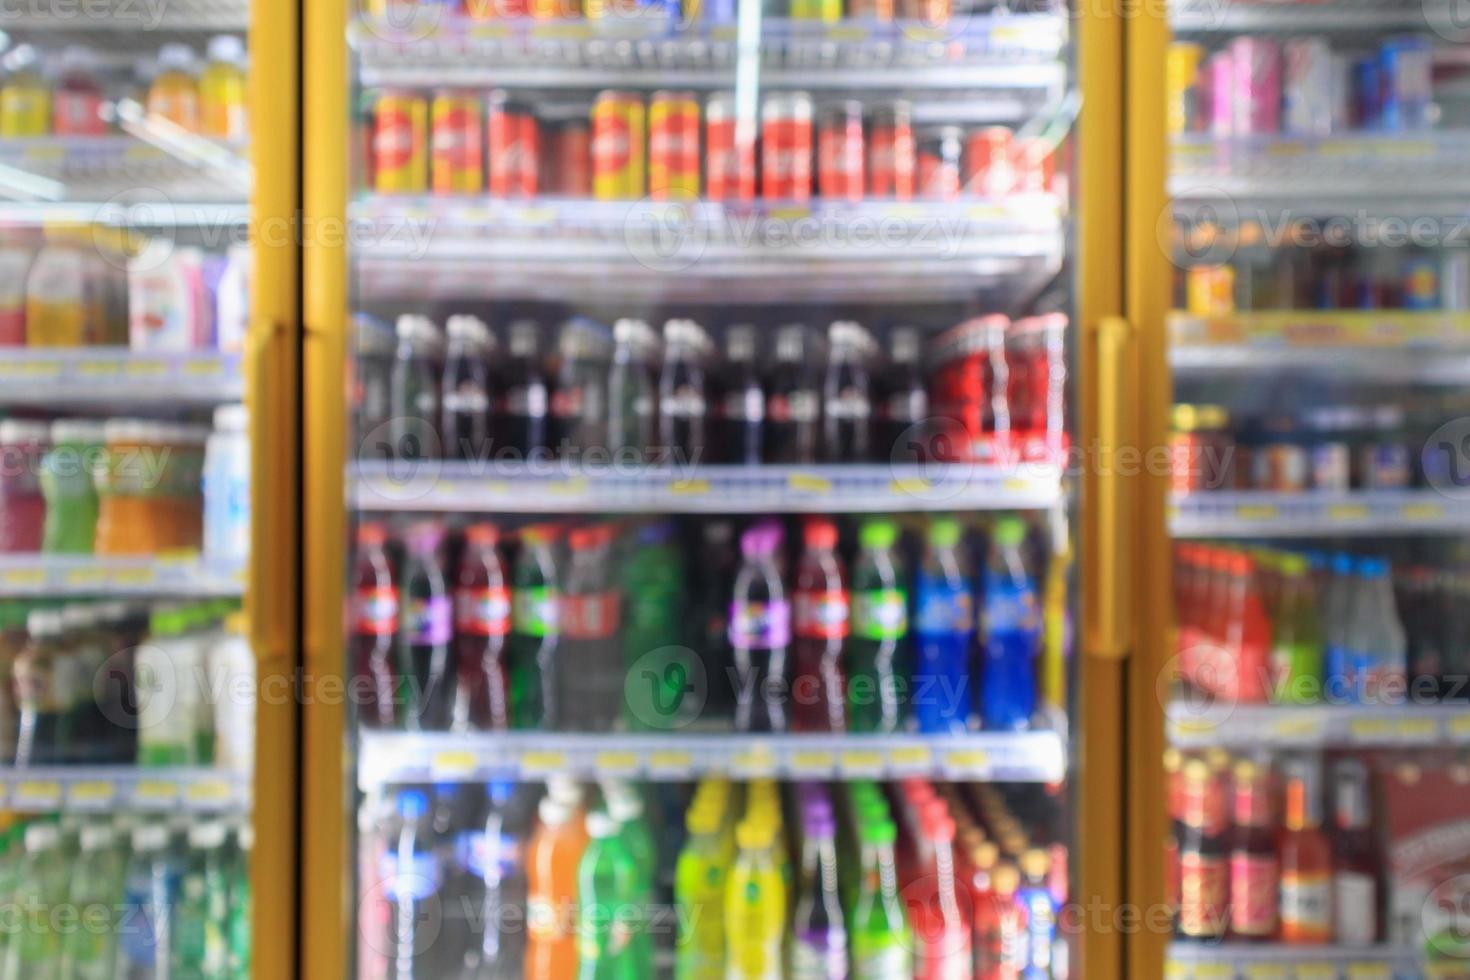 Supermercado tienda de conveniencia refrigeradores con botellas de refrescos en los estantes abstracto fondo borroso foto